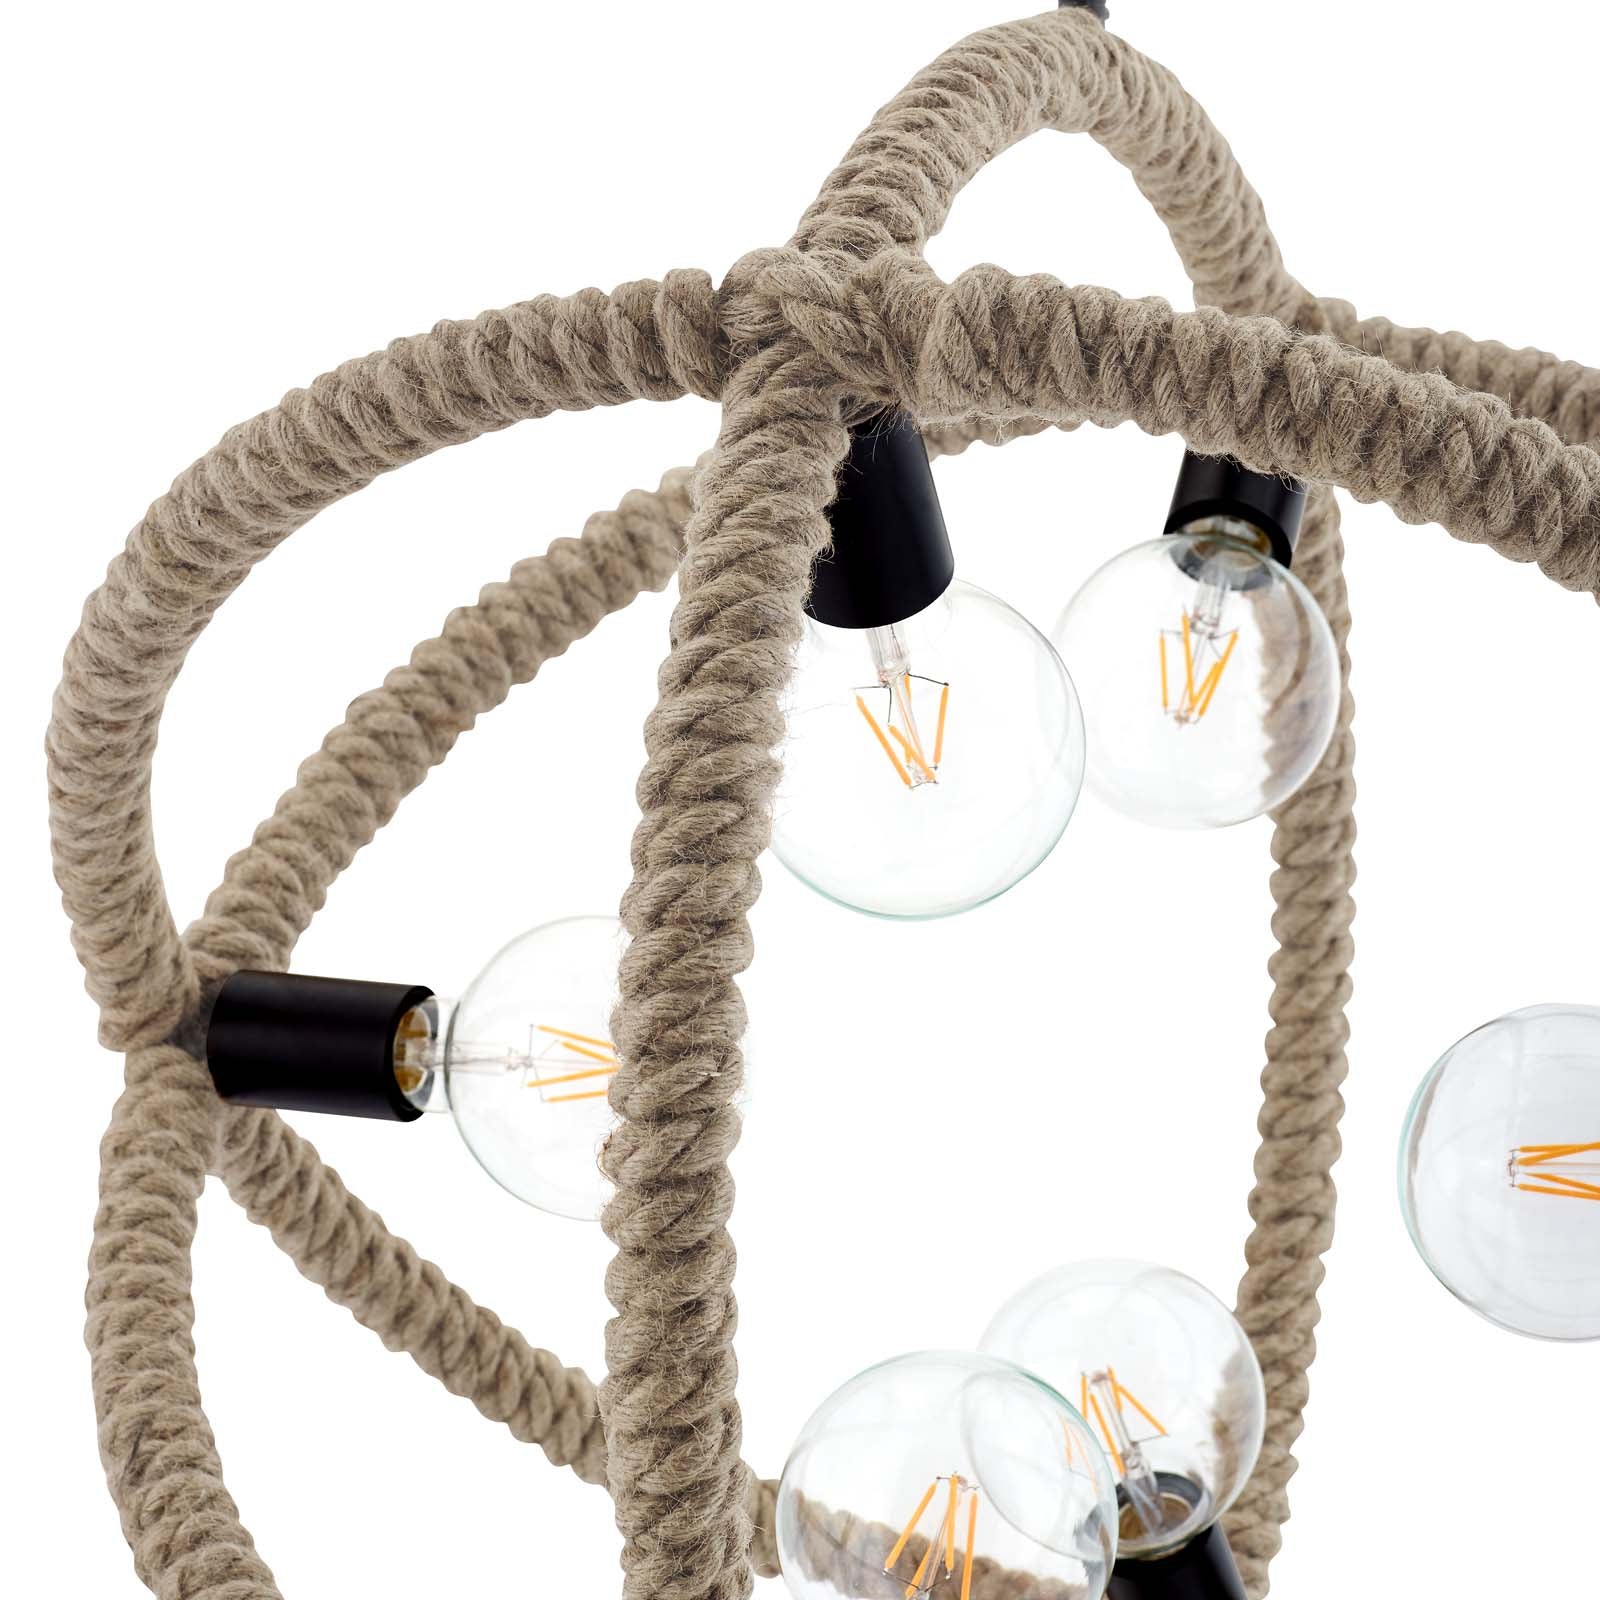 Modway Ceiling Lights - Transpose Rope Pendant Chandelier Black